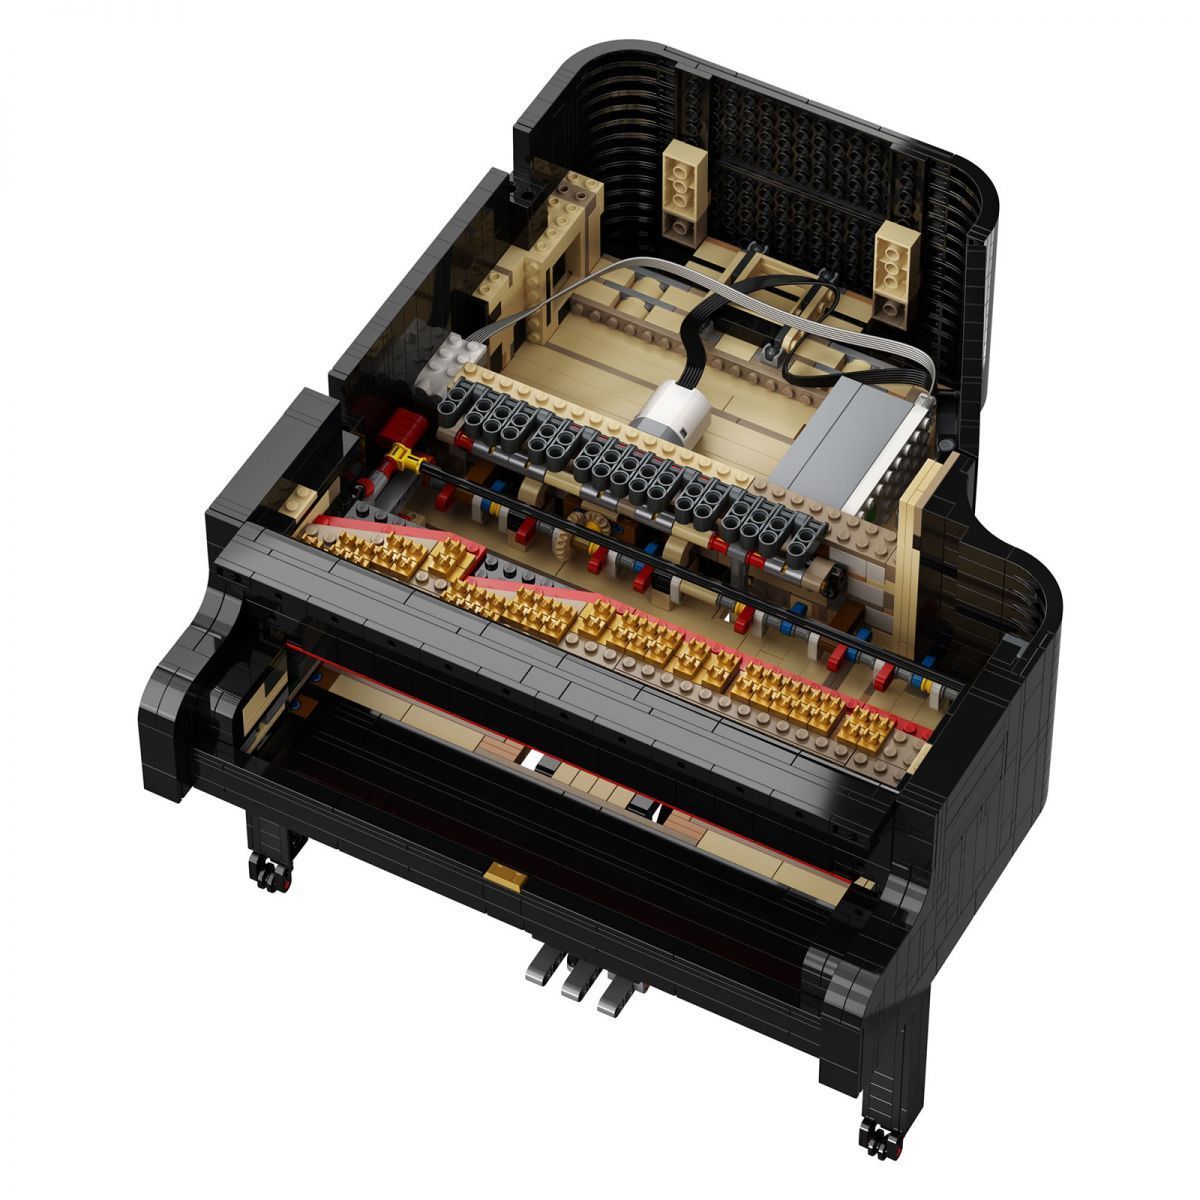 LEGO imagine un piano fonctionnel et contrôlable via un smartphone #4